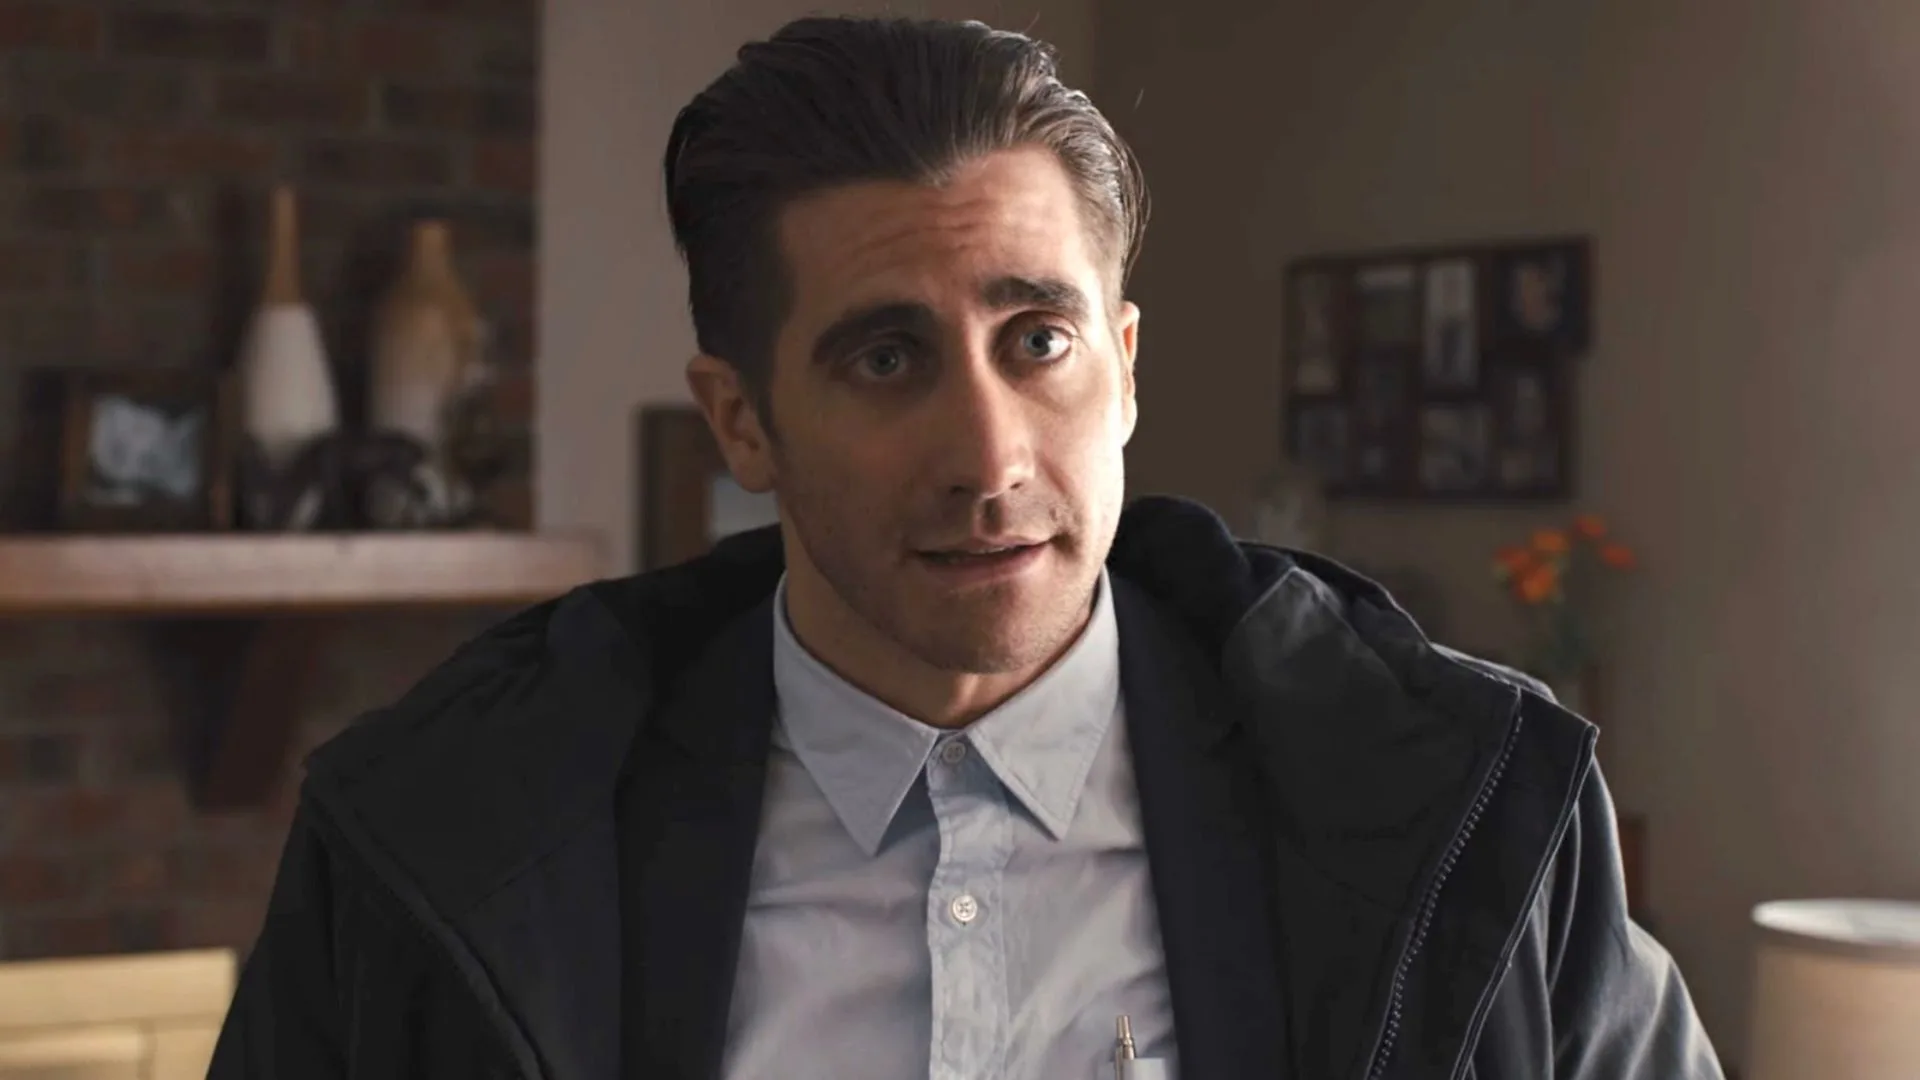 Que-papel-estuvo-a-punto-de-interpretar-Jake-Gyllenhaal-en-la-trilogia-de-El-caballero-de-la-noche